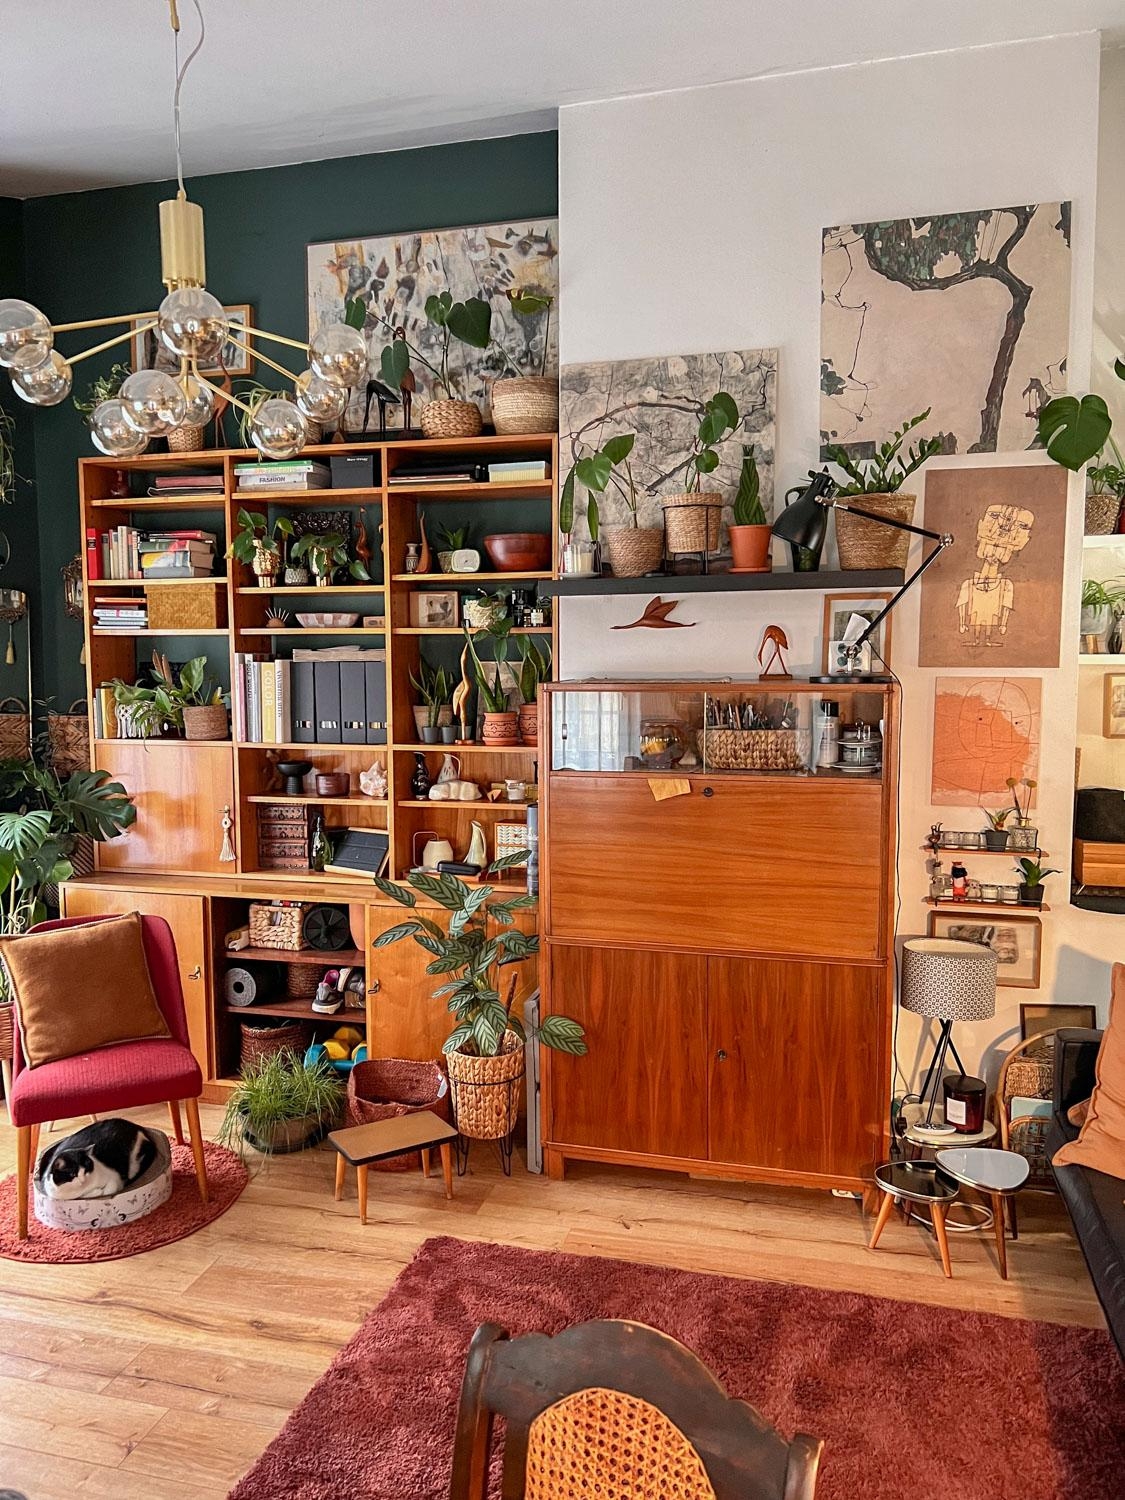 My livingroom / Wohnzimmer 2022
Es hat sich viel getan. Vintage rules! #myvintagehome #vintage #kleinanzeigenfund #cats